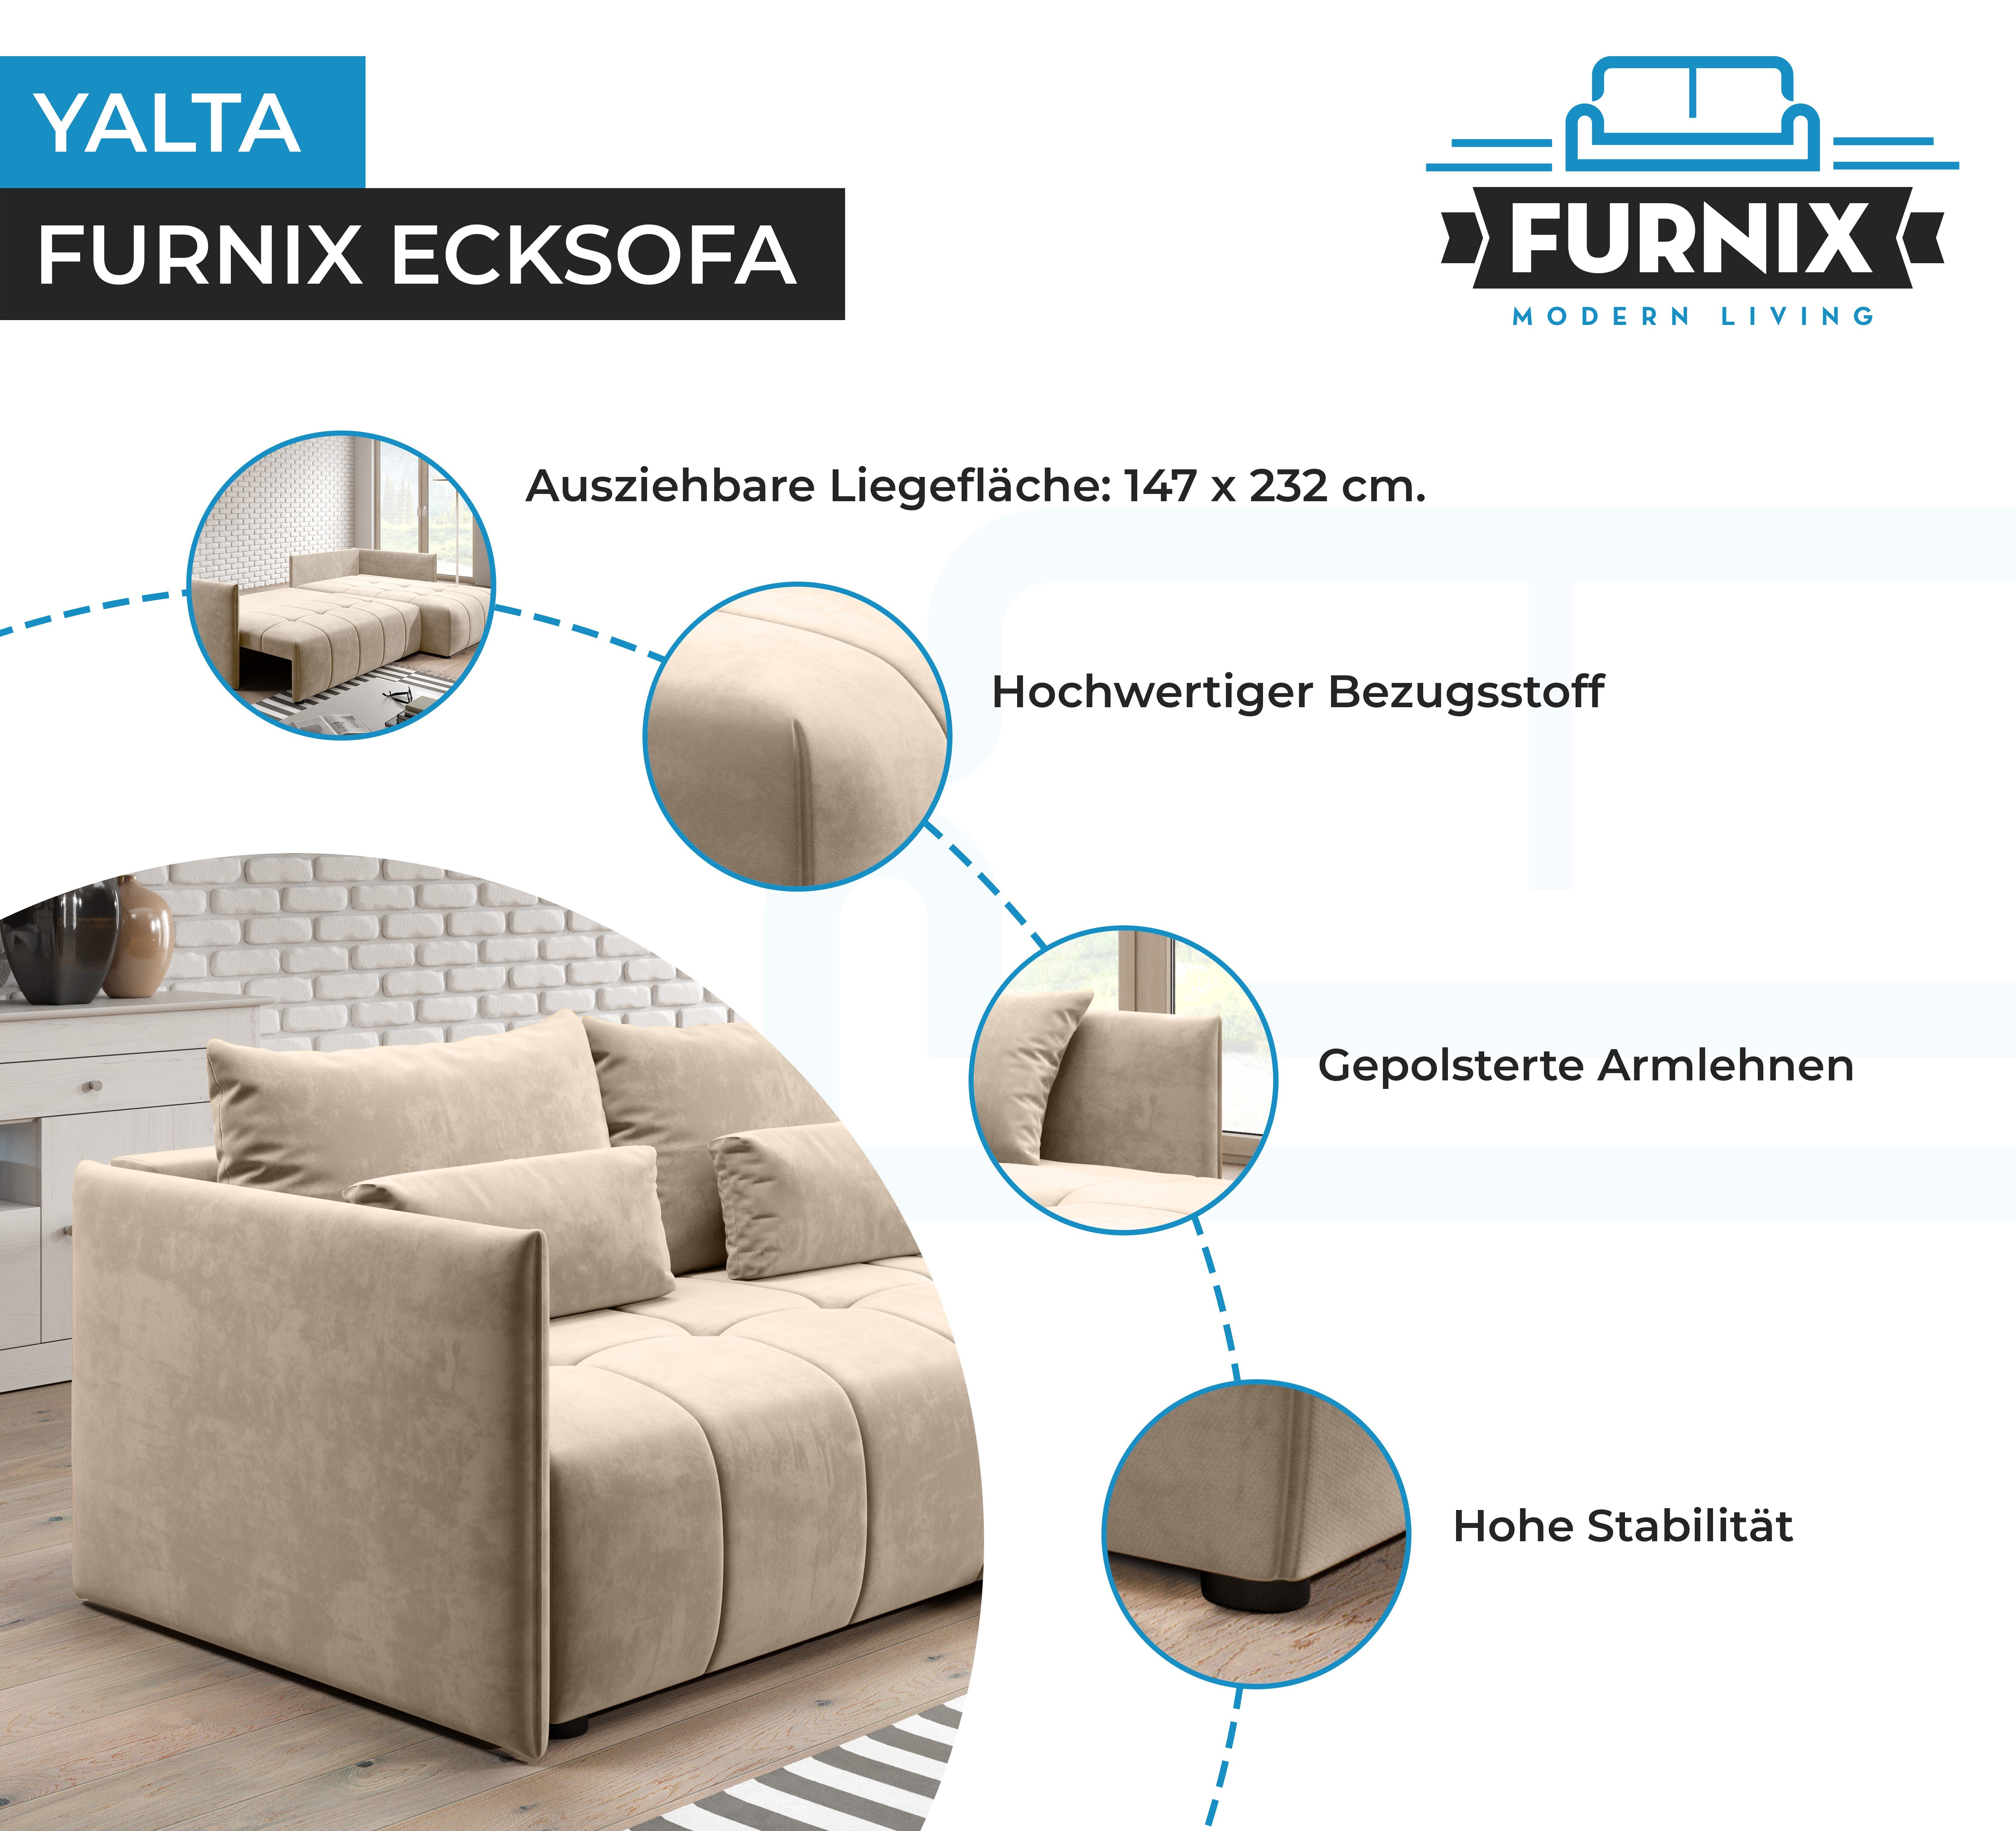 Kissen, in und 02 YALTA Beige mit Europe Couch Furnix Ecksofa ausziehbar Schlafsofa Made MH Bettkasten